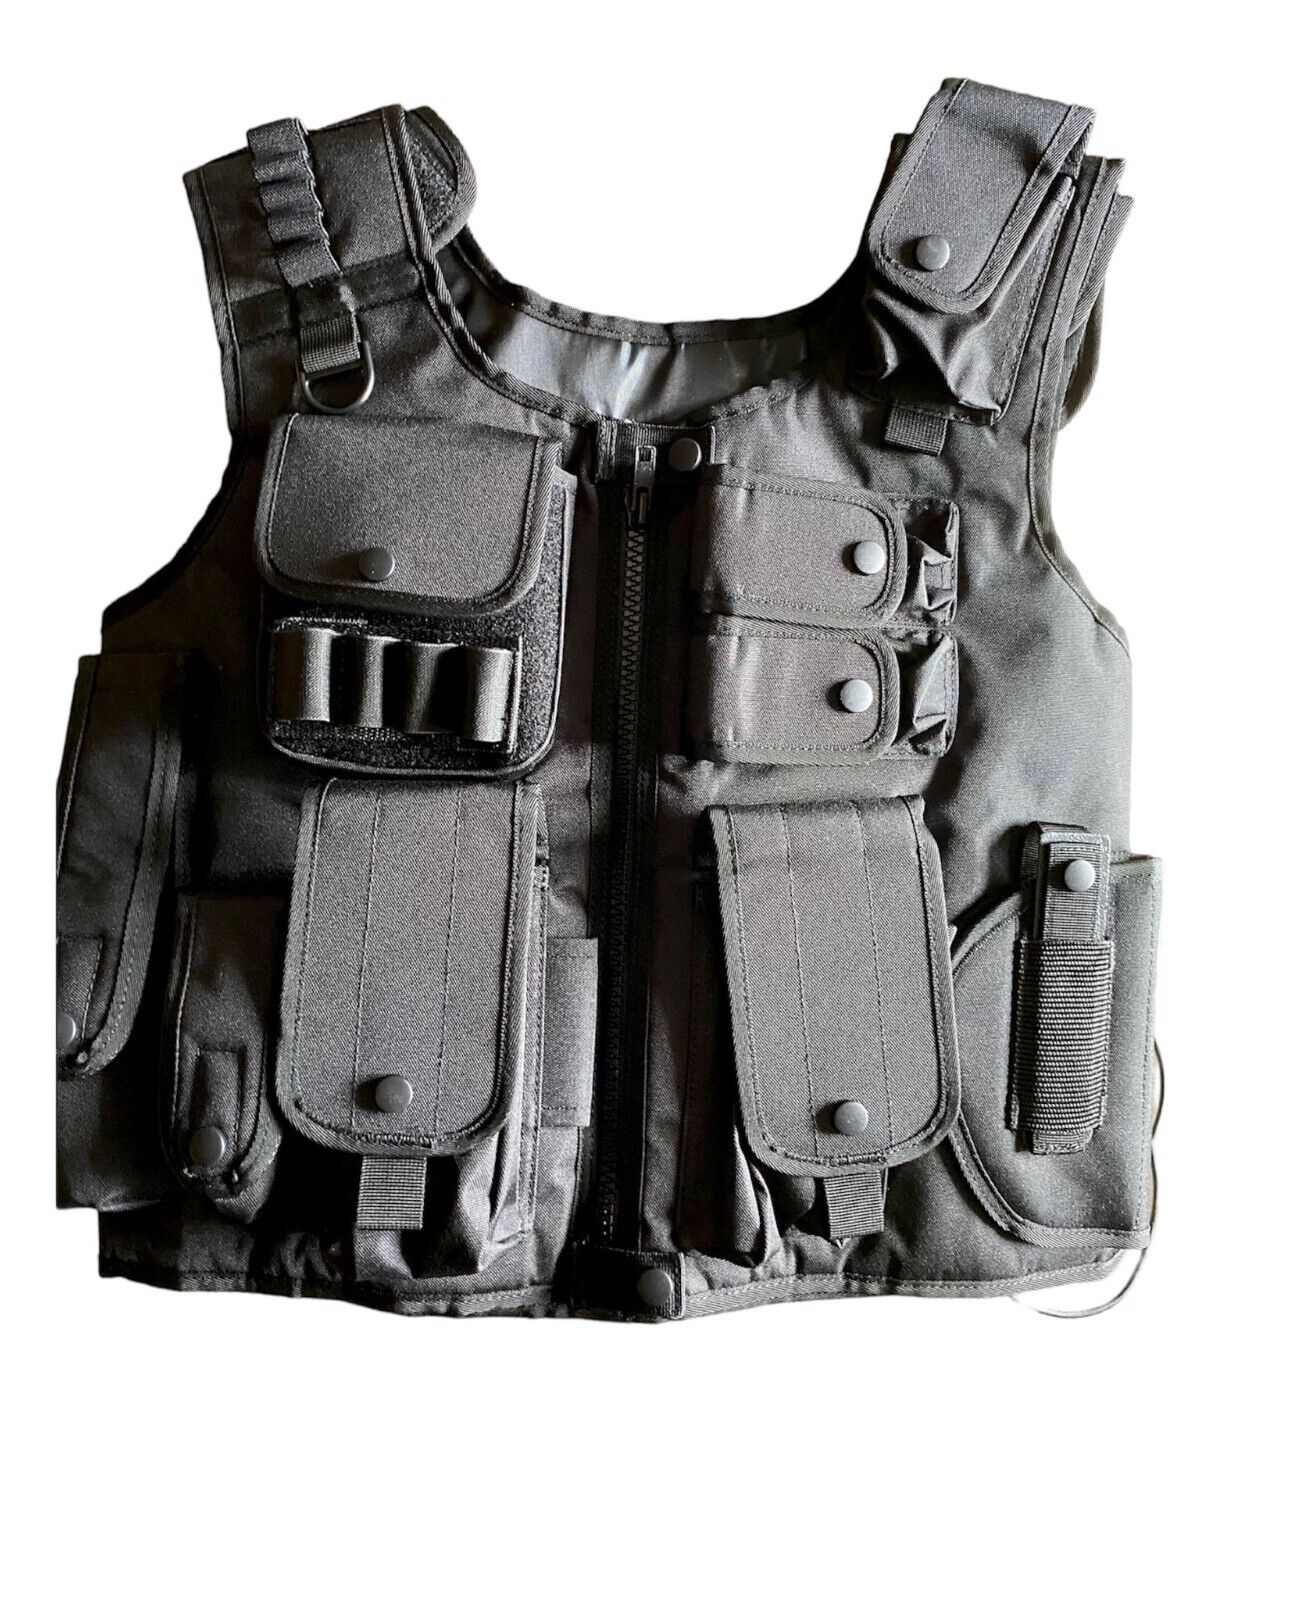 Law Enforcement Tactical SWAT Vest, Black